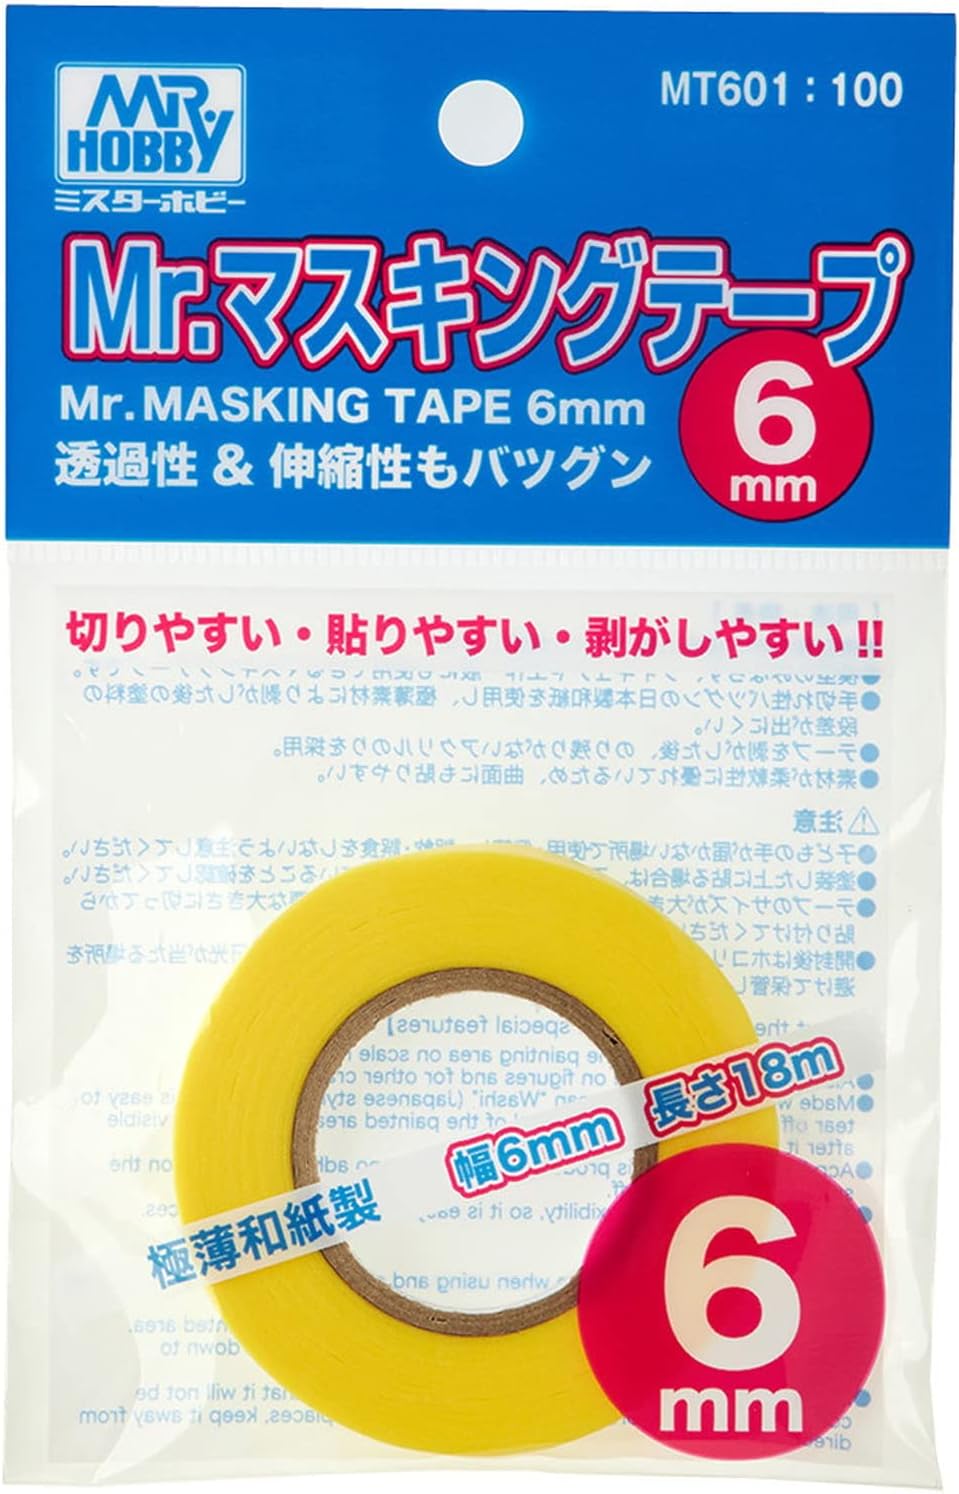 Mr. Hobby Mr. Masking Tape 6mm For plastic Model Kits MT601